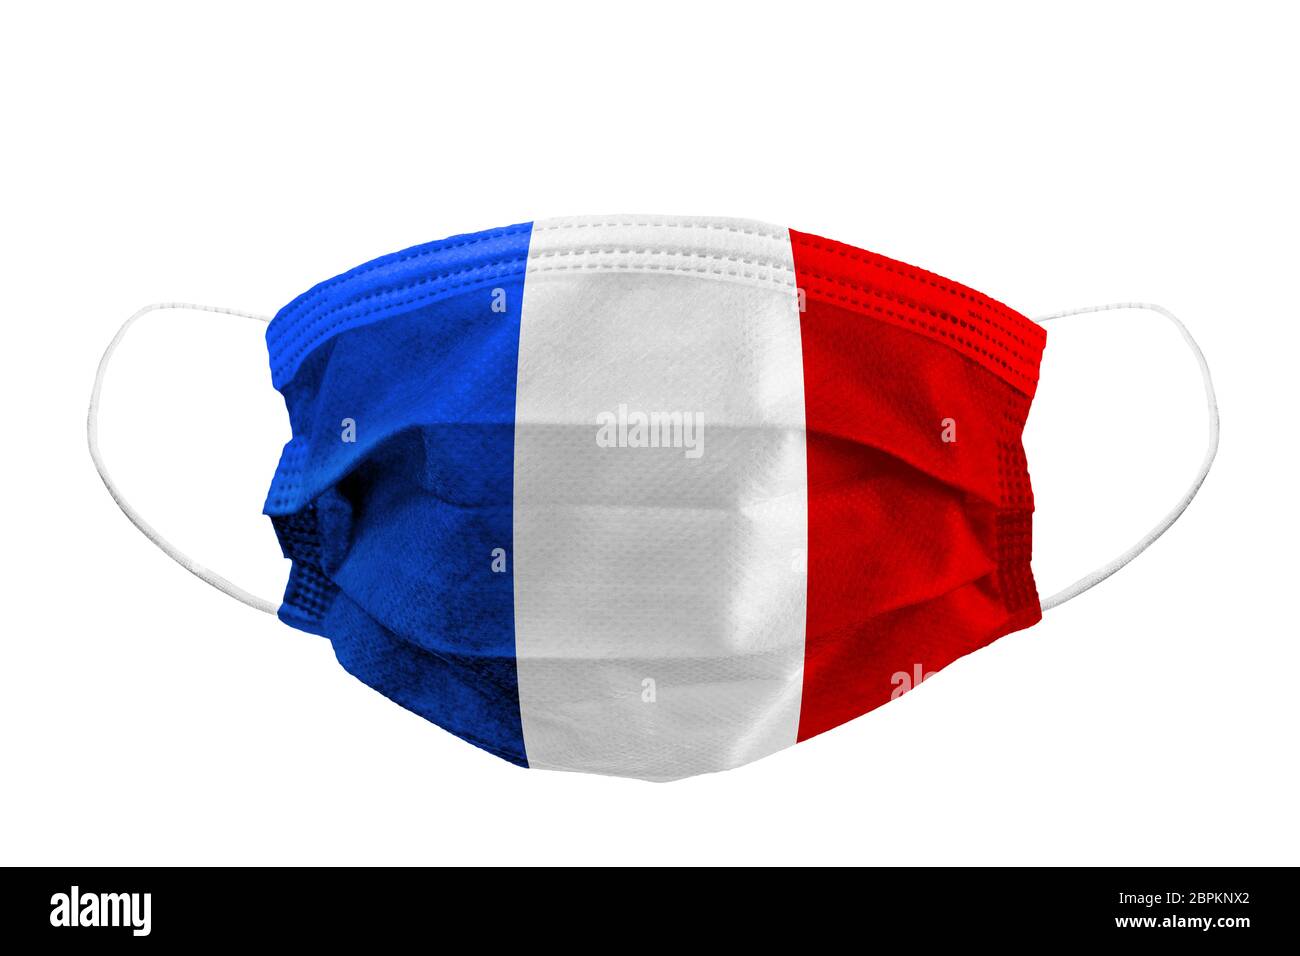 Vista frontal de la máscara quirúrgica bandera francesa aislada con correas de goma para cubrir la boca y la nariz para proteger la cara del virus Foto de stock